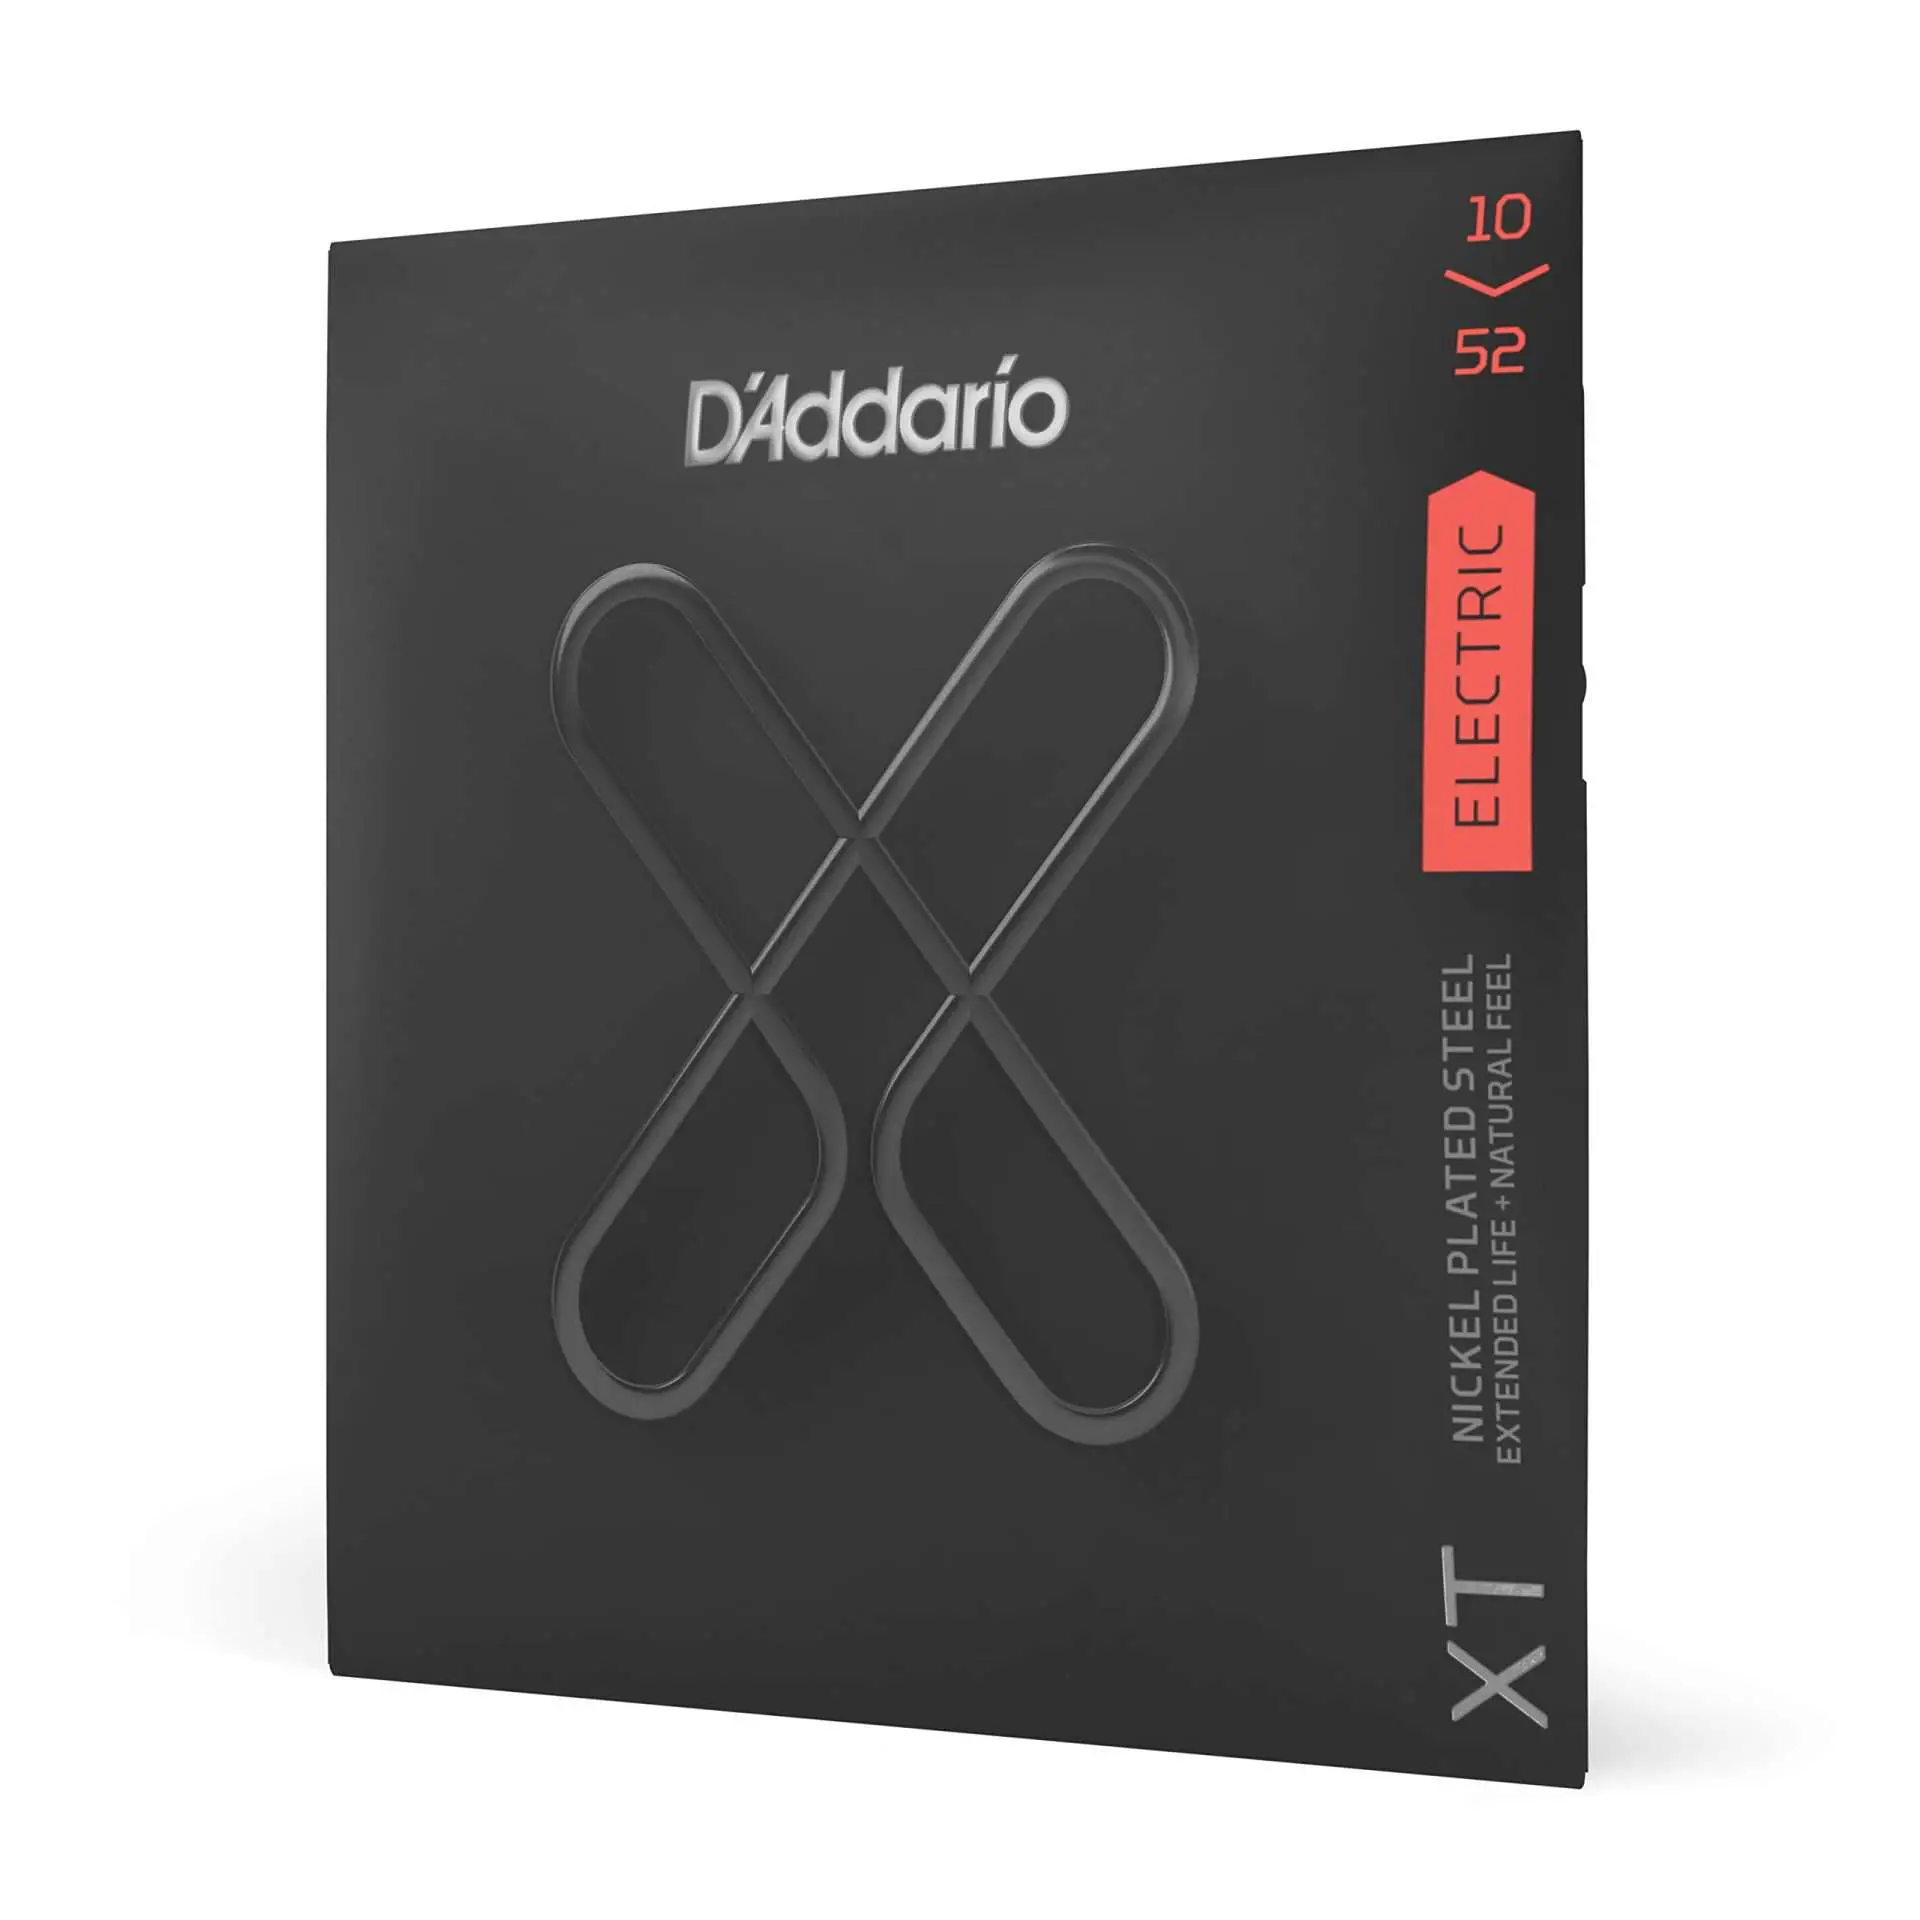 D'Addario XT Nickel Coated Strings